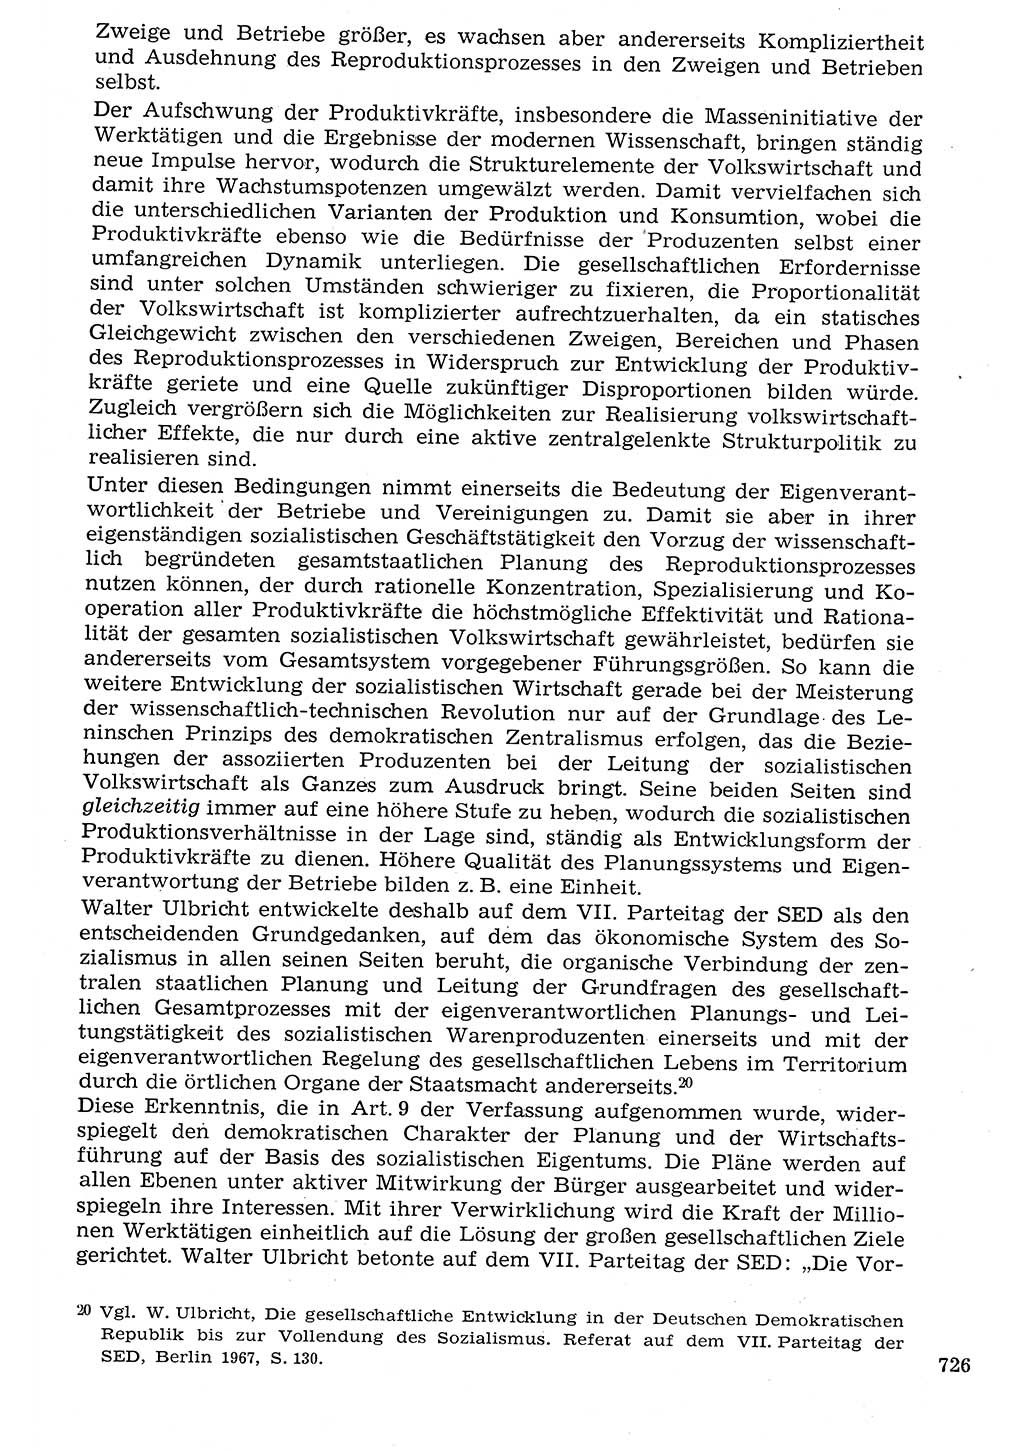 Staat und Recht (StuR), 17. Jahrgang [Deutsche Demokratische Republik (DDR)] 1968, Seite 726 (StuR DDR 1968, S. 726)